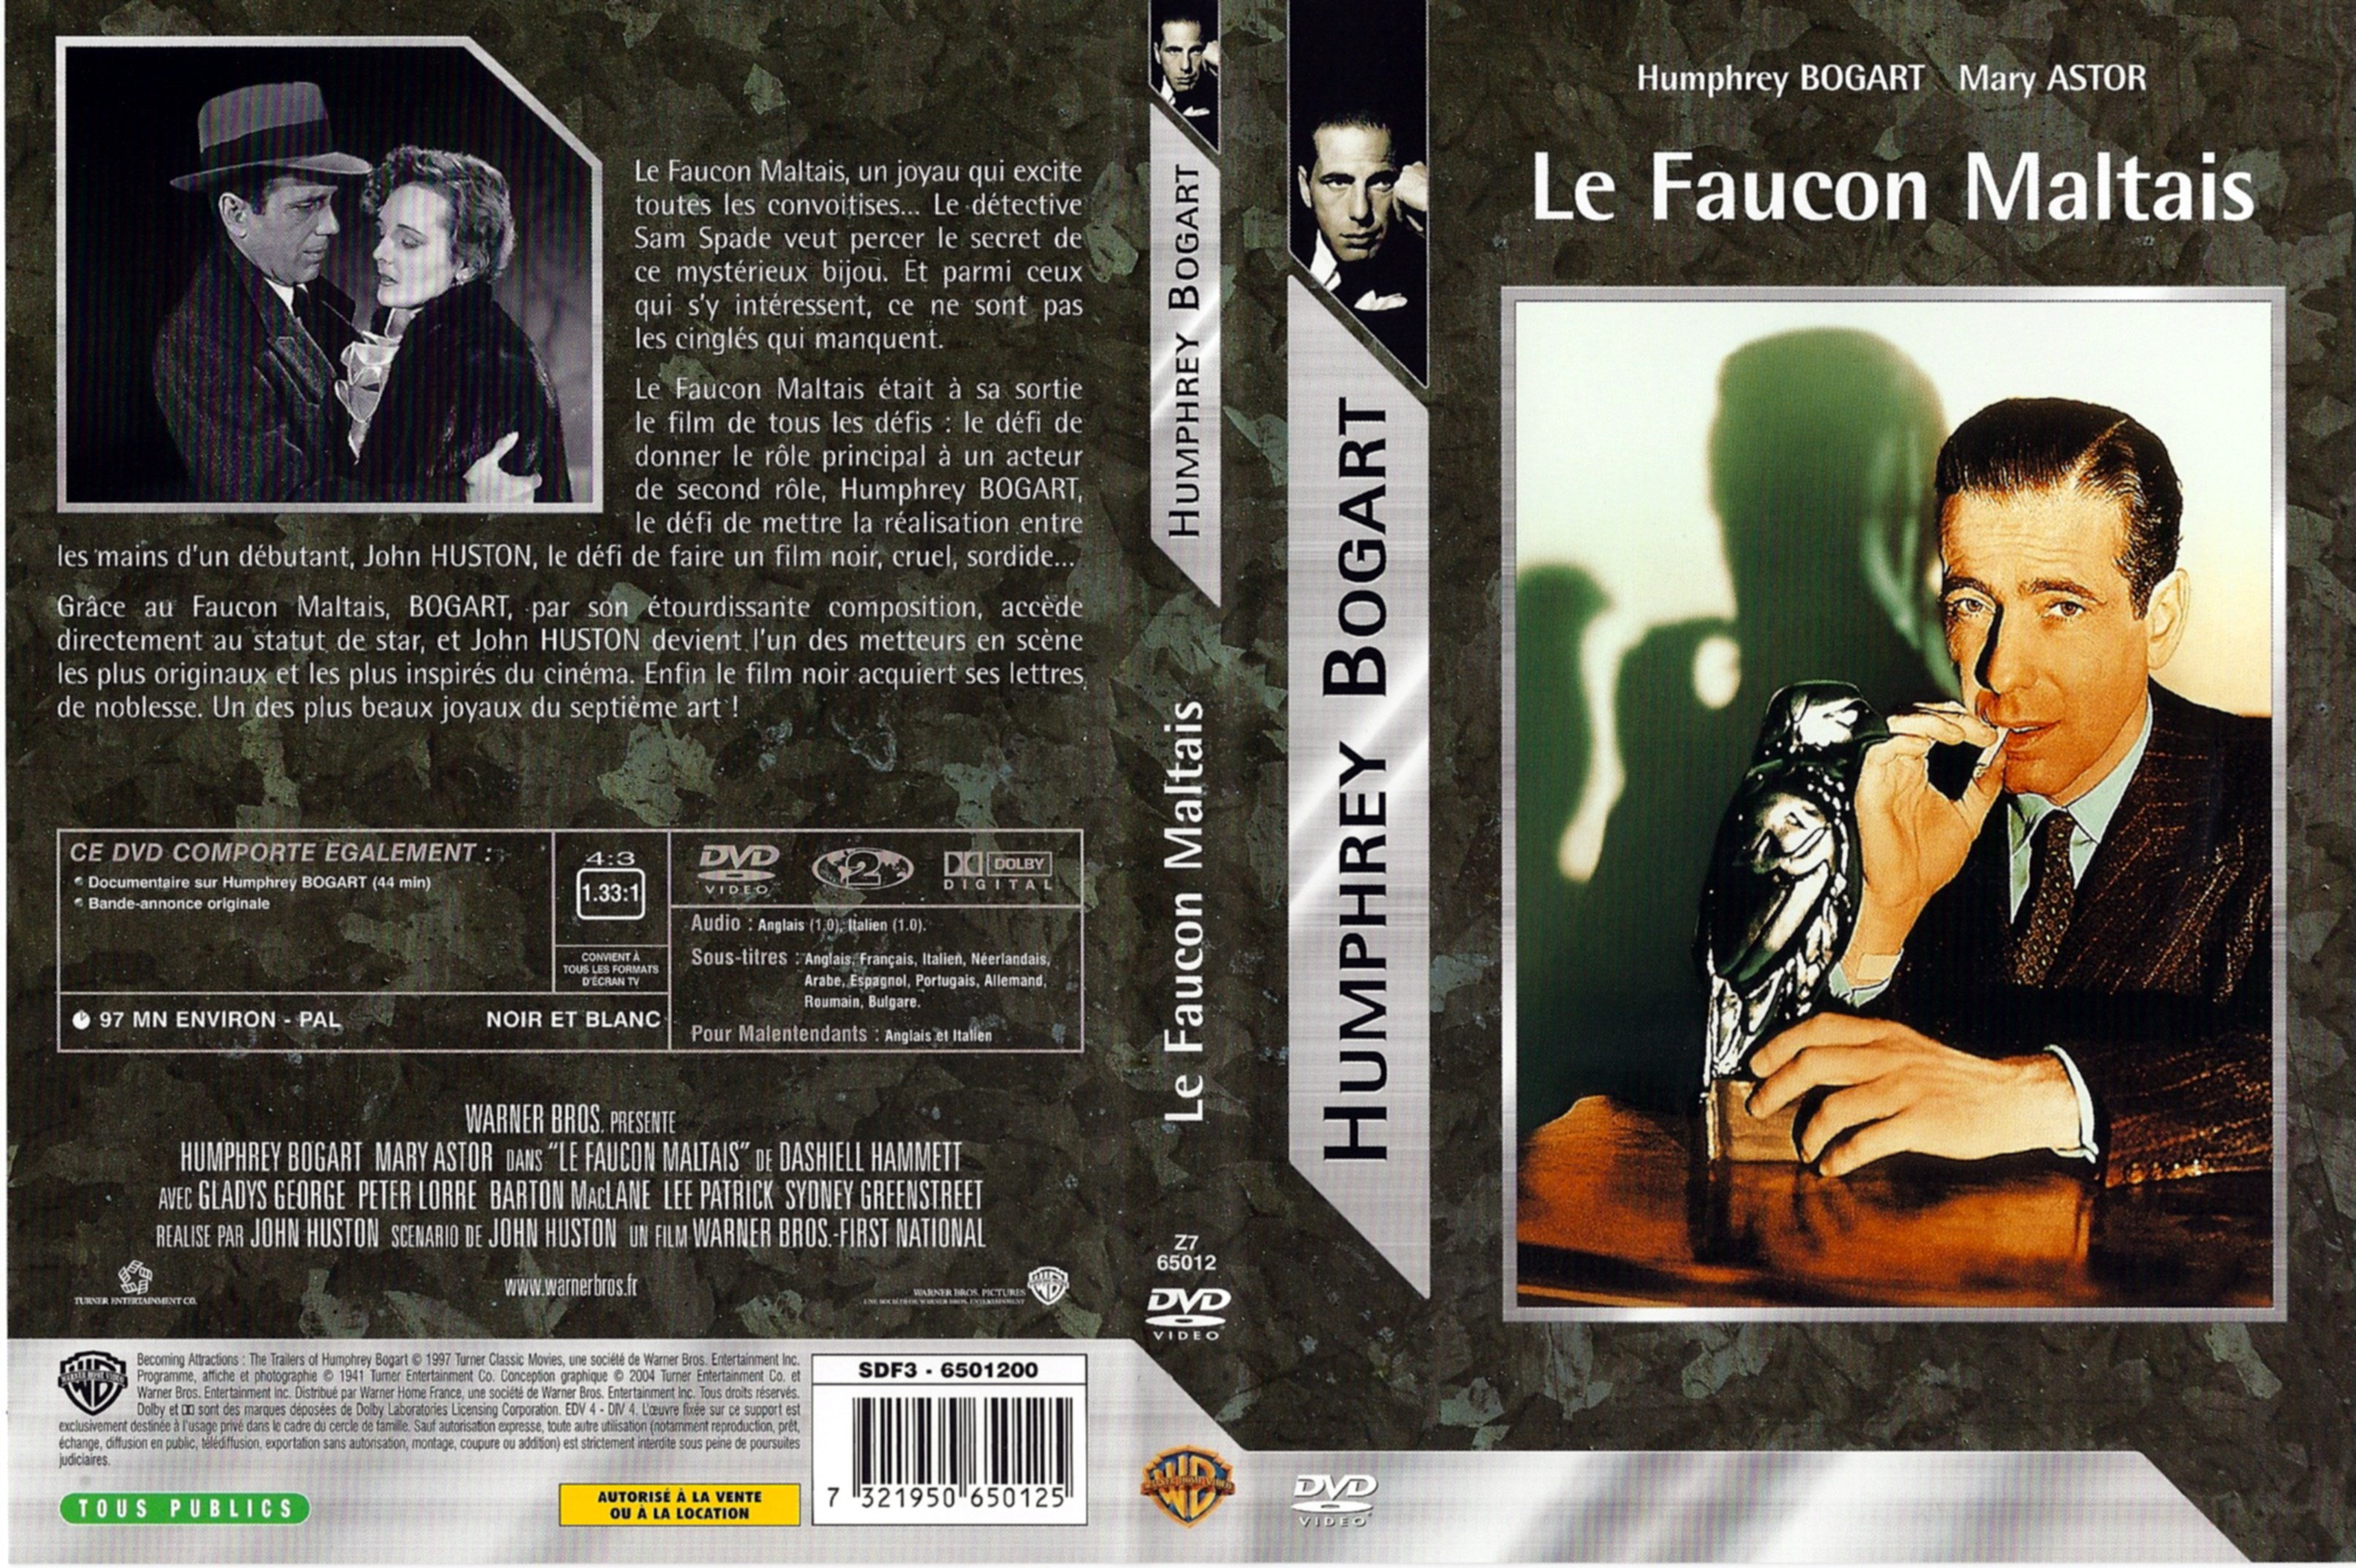 Jaquette DVD Le faucon maltais v2